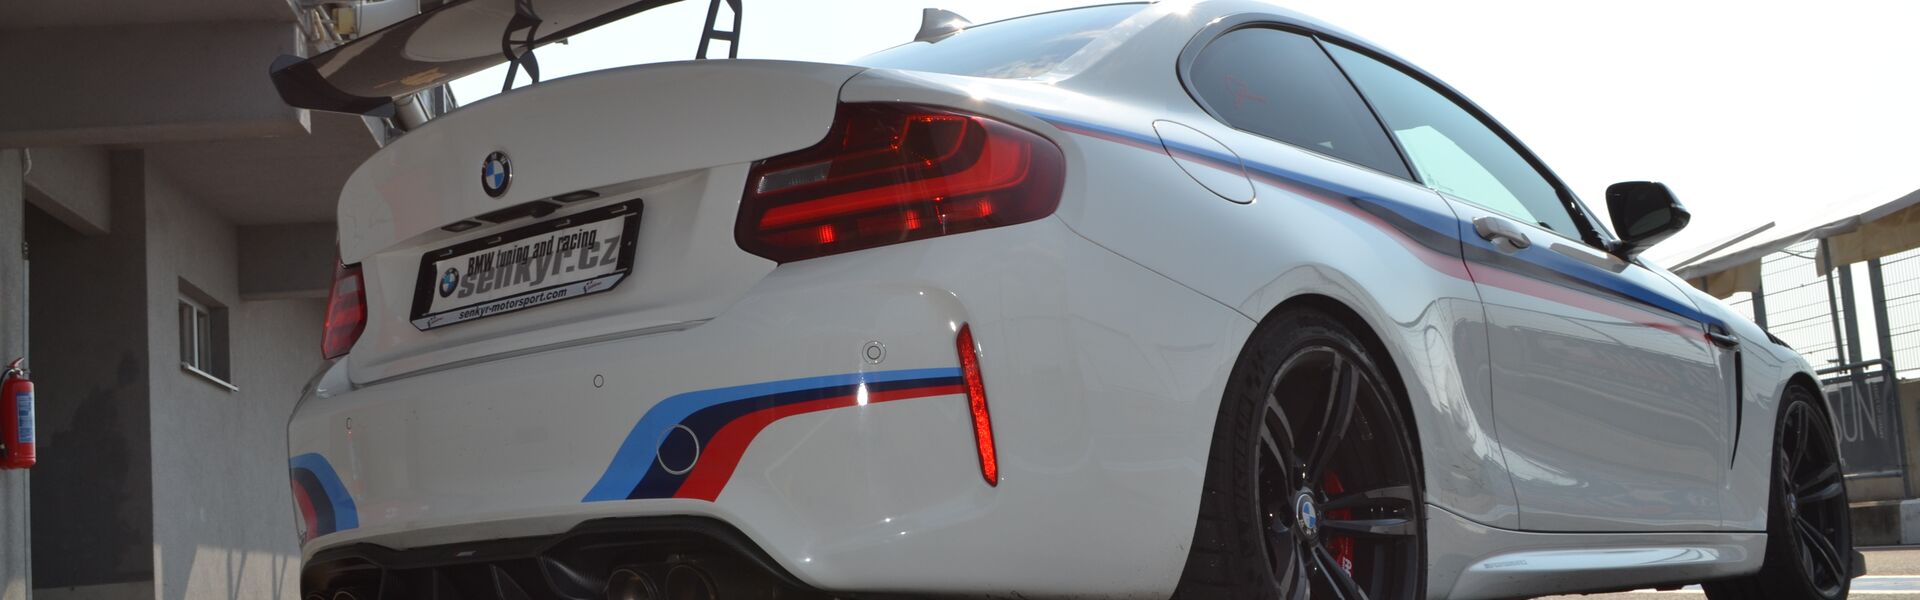 Bodykit/ Aerodynamické prvky pro automobil BMW M6 F12, F13